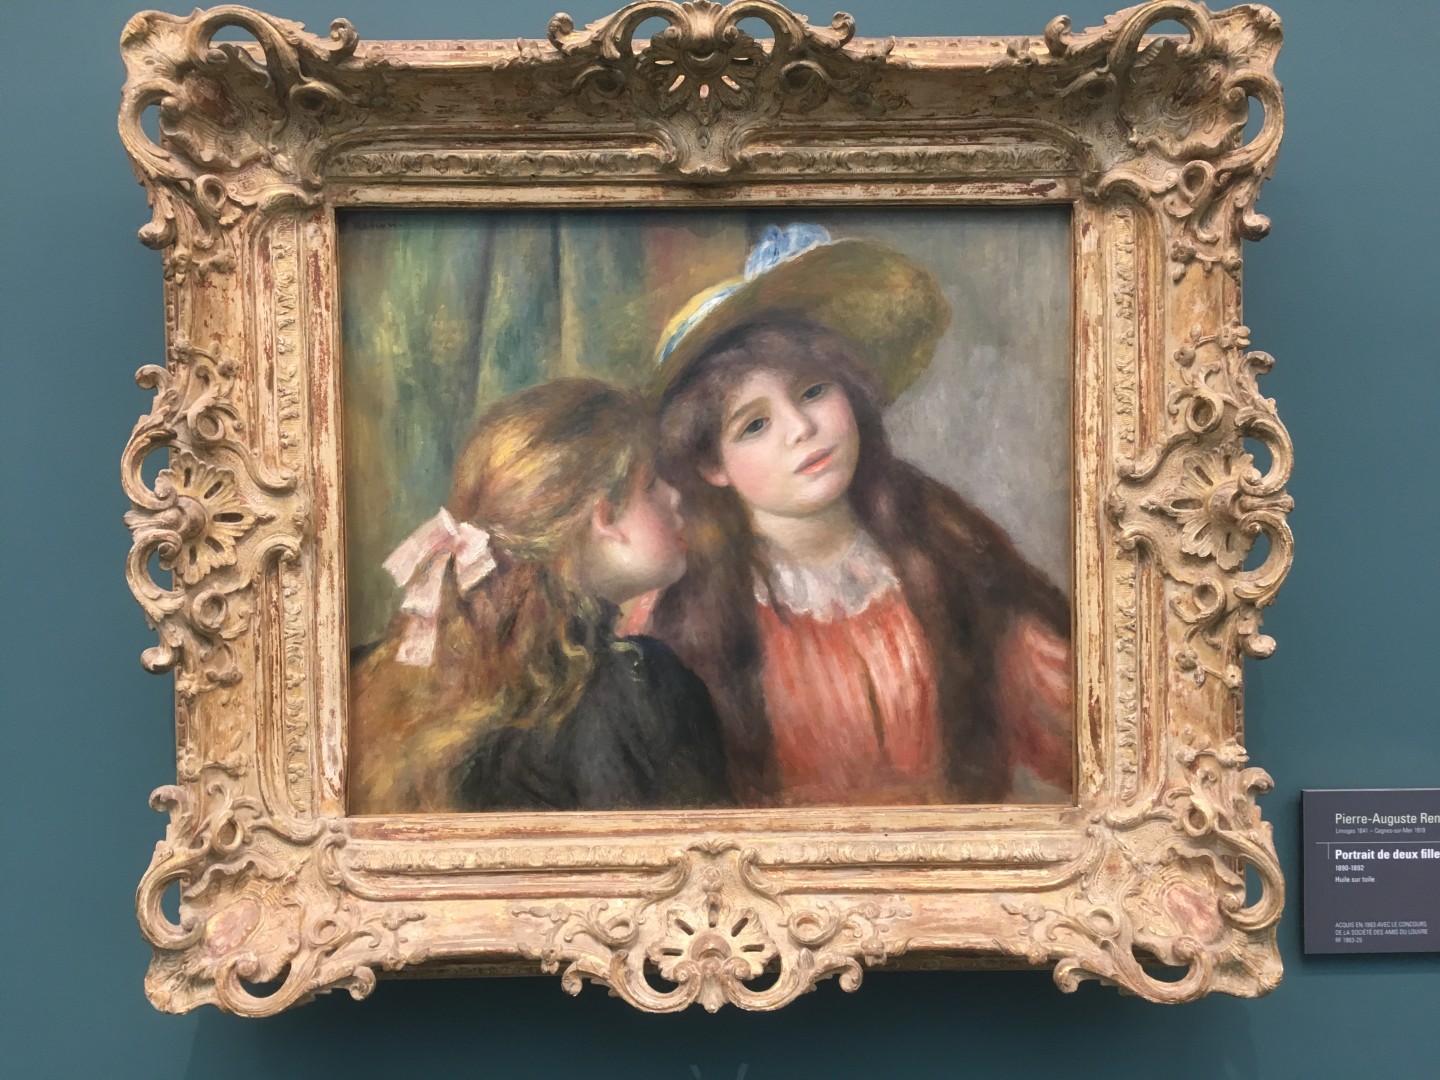 Pierre-Auguste Renoir Portrait de deux fillettes